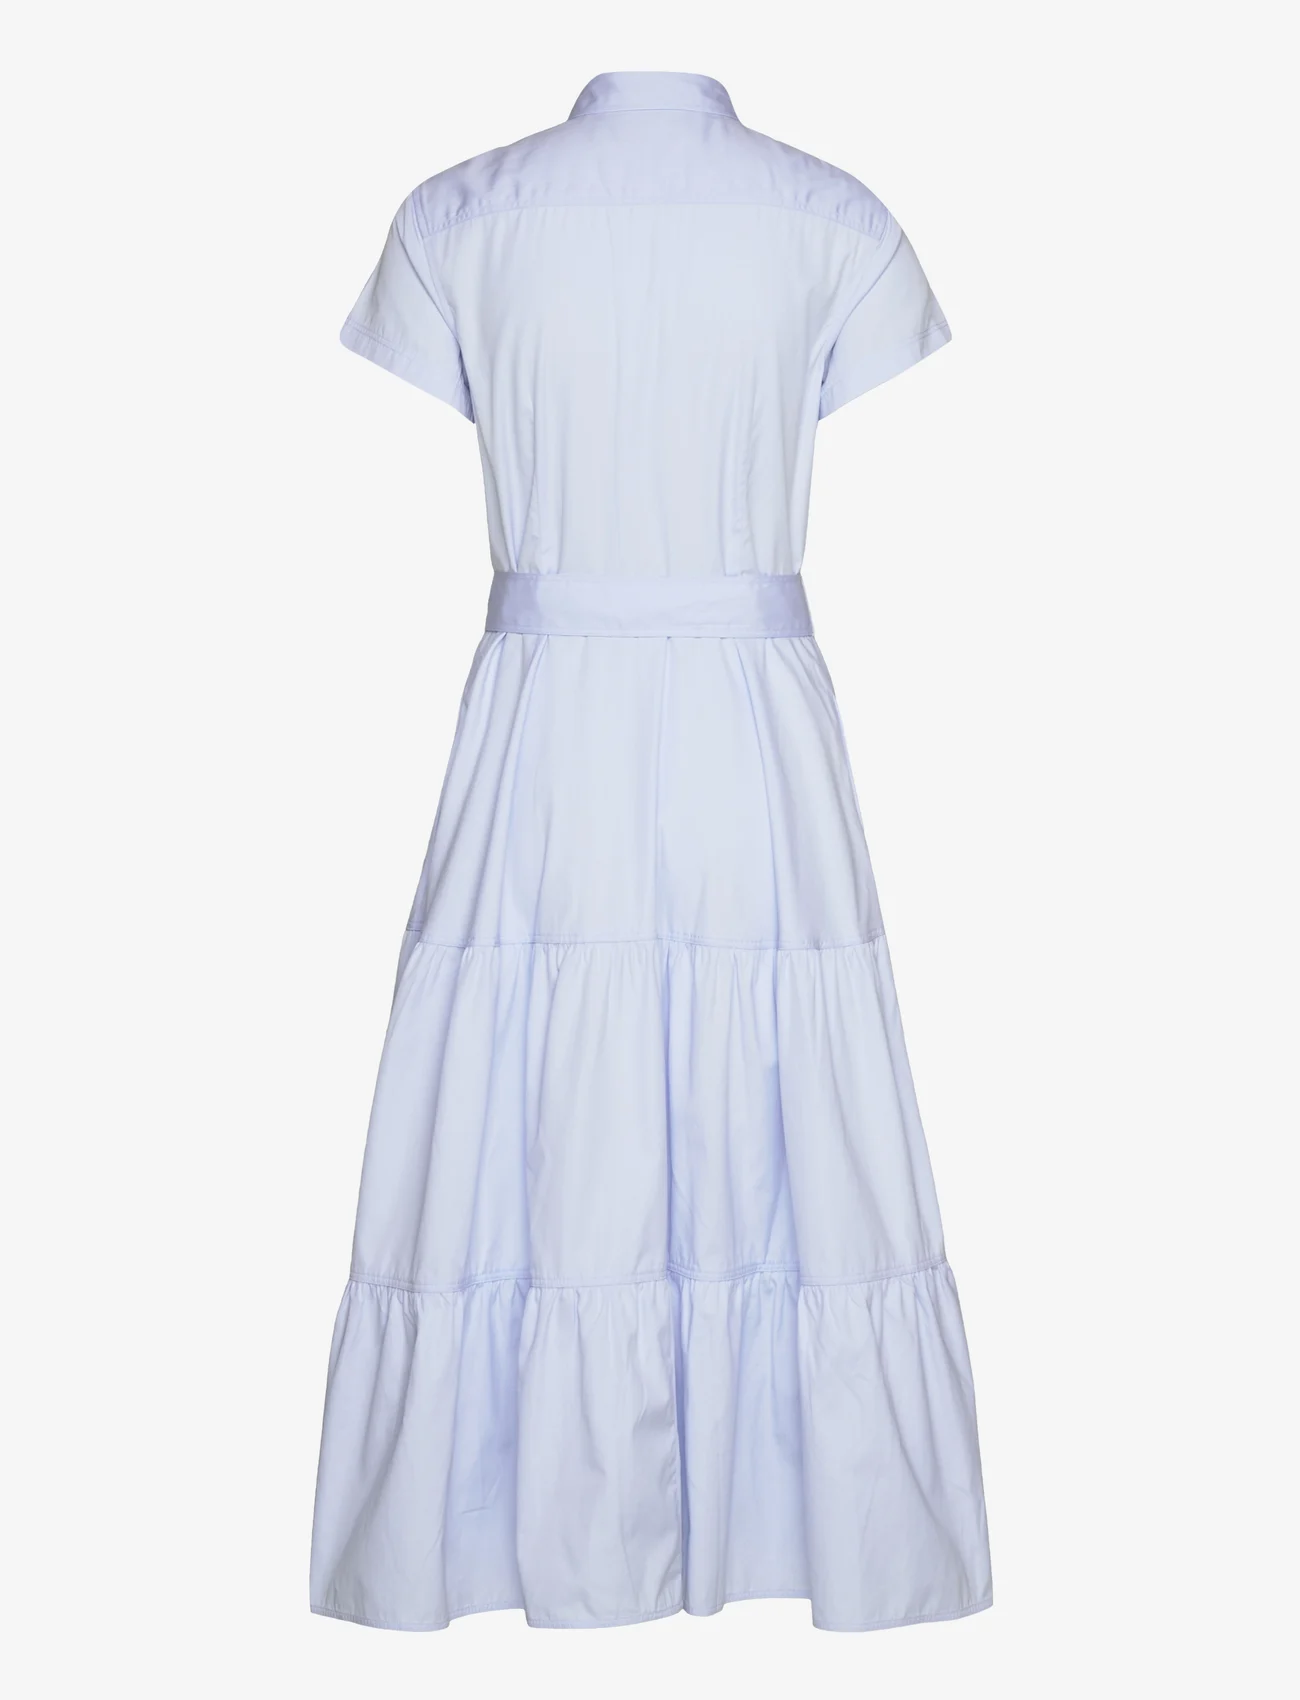 Polo Ralph Lauren - Tiered Cotton Shirtdress - marškinių tipo suknelės - light blue - 1